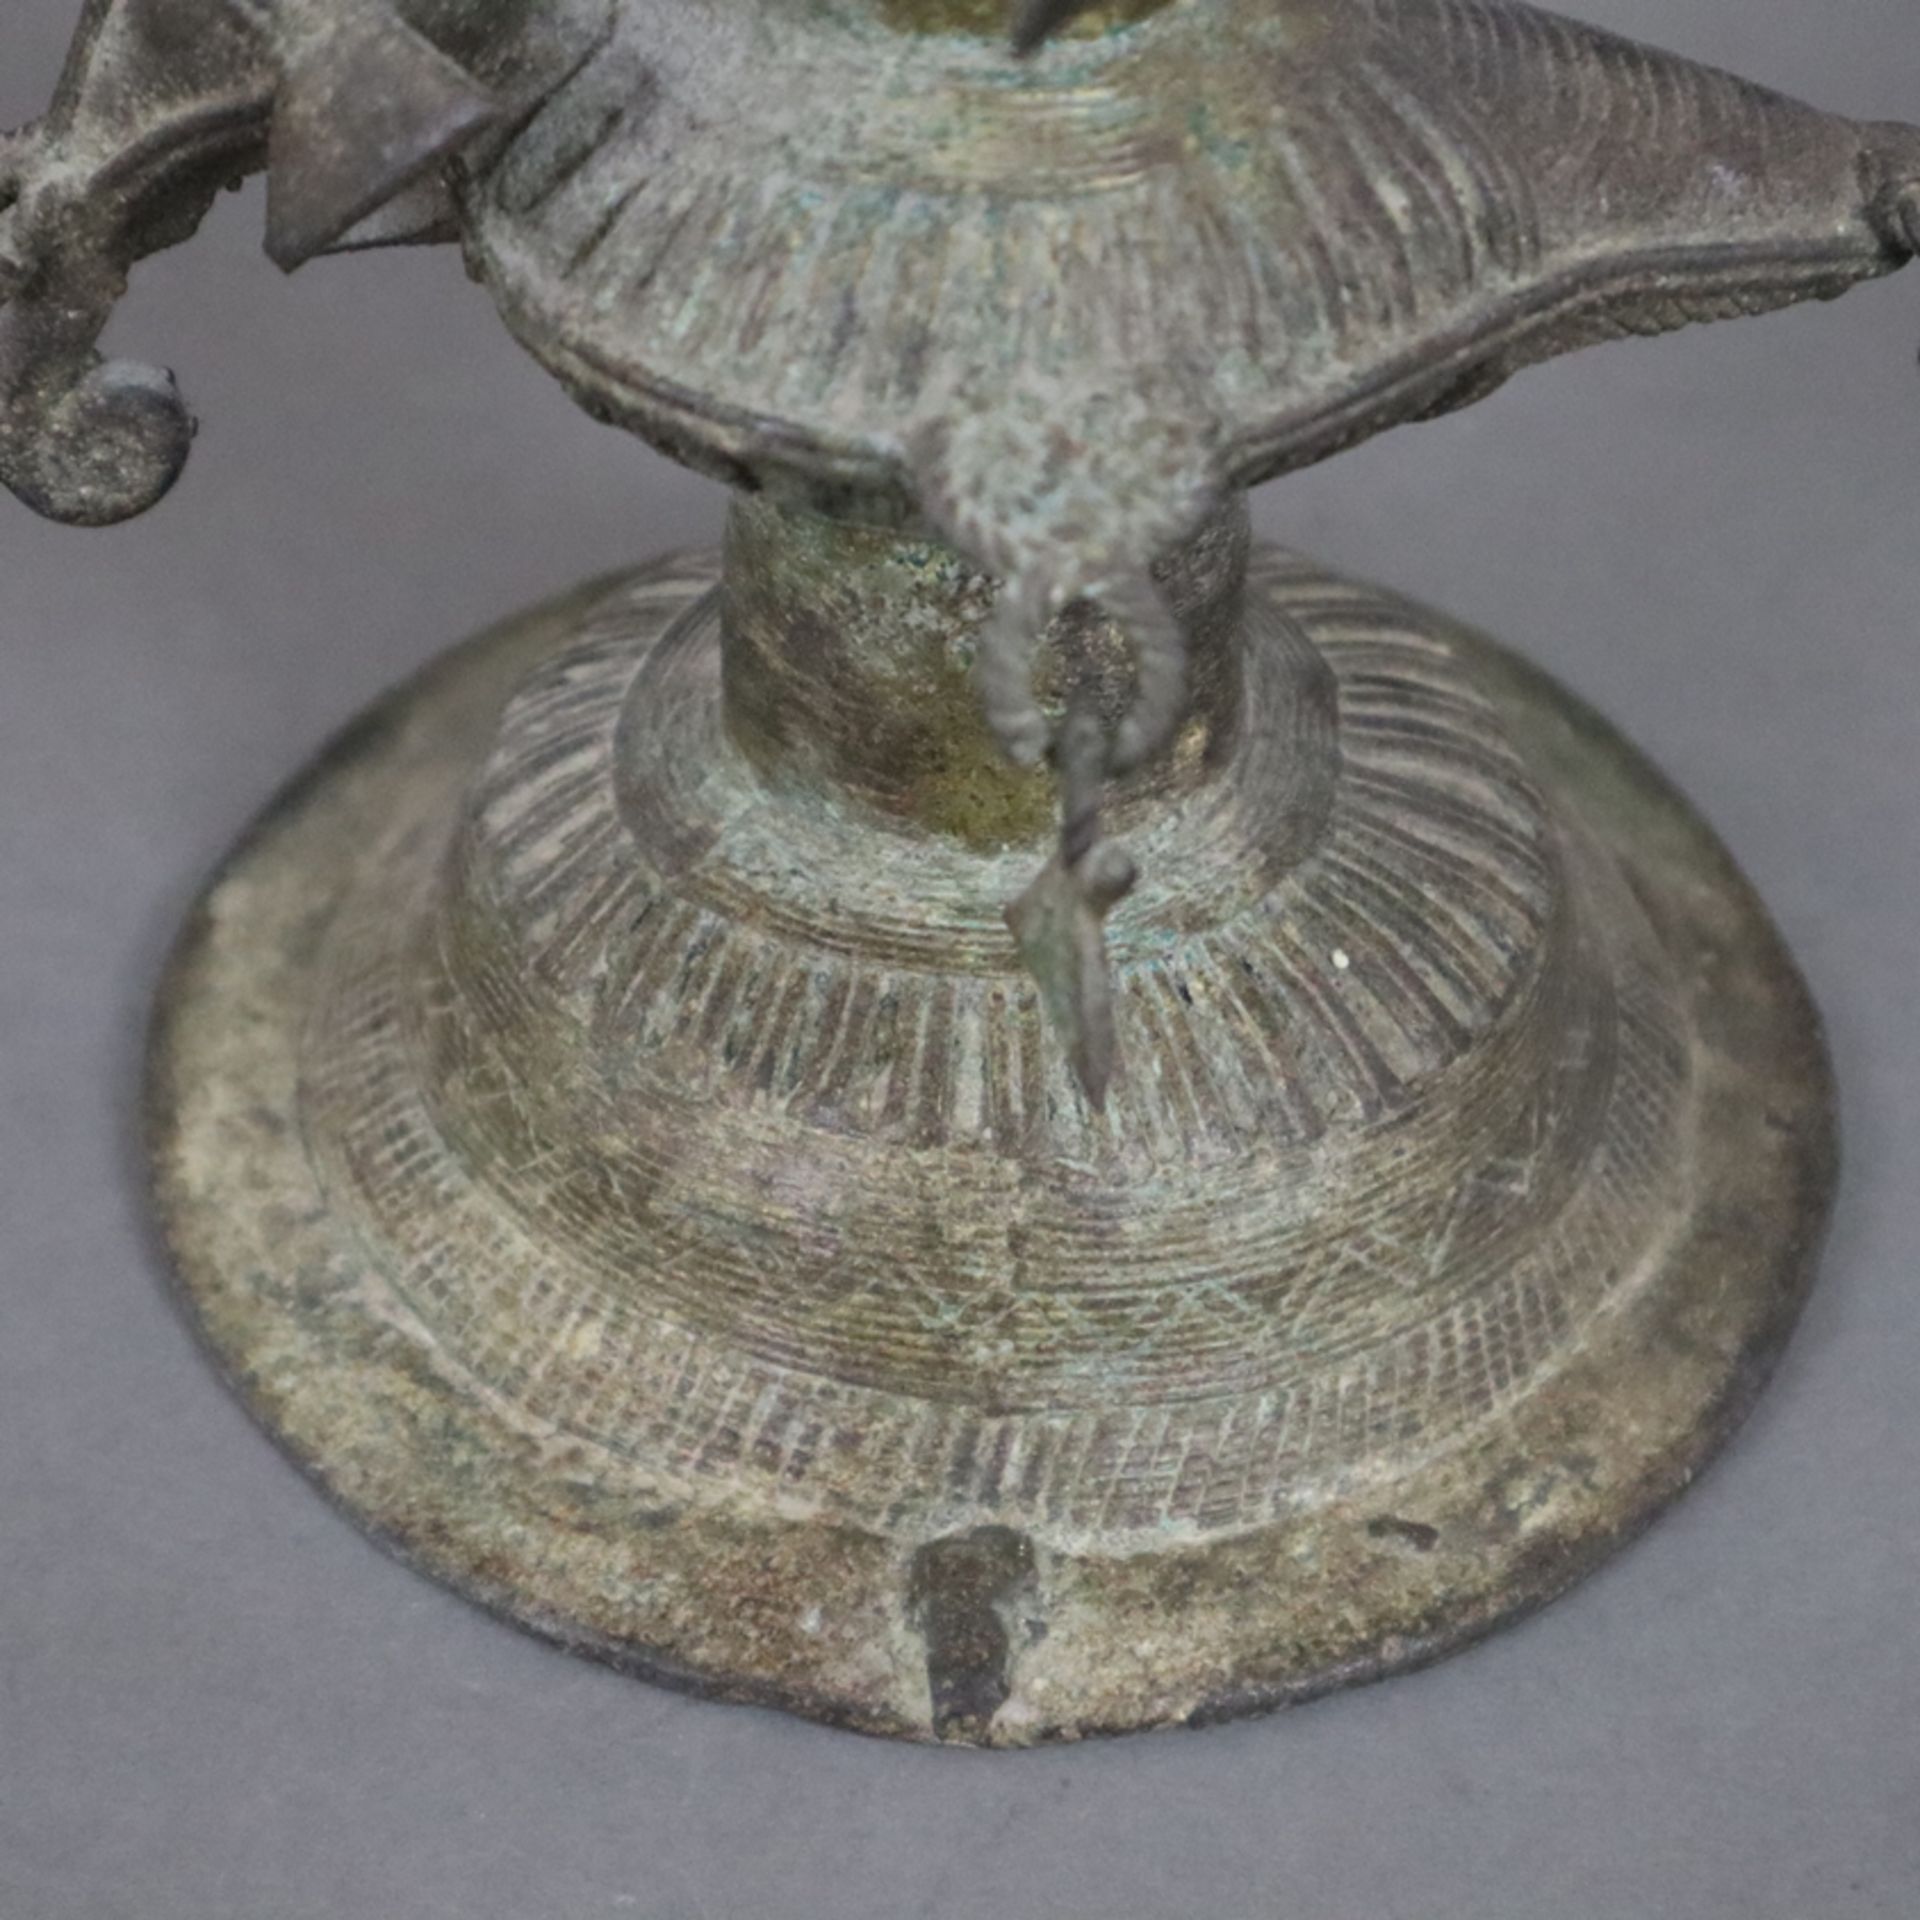 Hohe Öllampe - Indien, Bastar-Region, Bronze mit Alterspatina, über gewölbtem Fuß gegliederter Scha - Image 9 of 9